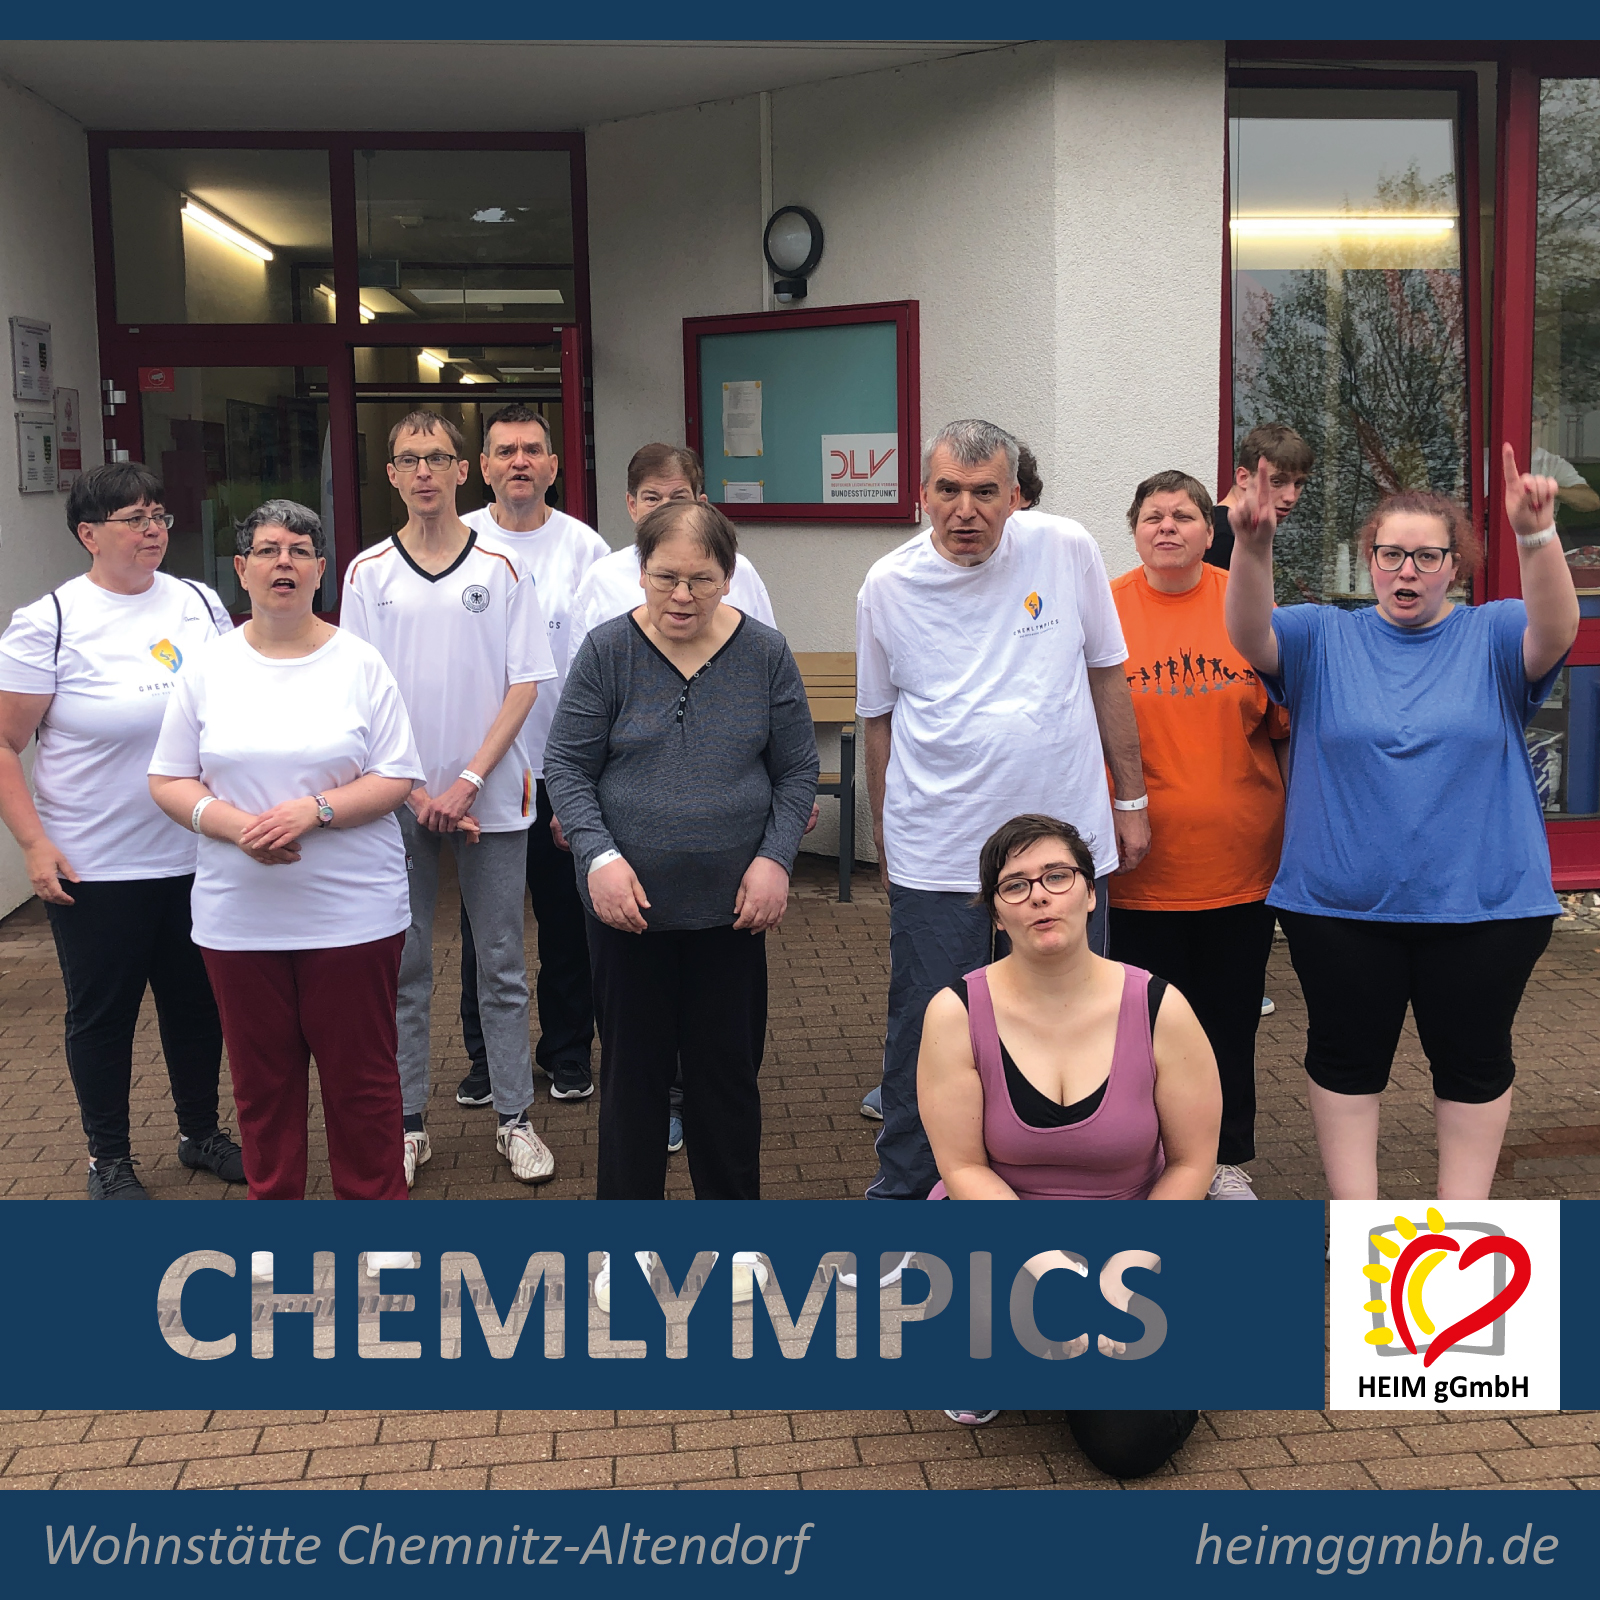 Sportlich aktiv und engagiert - Teilnahme des Teams der HEIM gemeinnützigen GmbH bei den 12. Chemlympics in Chemnitz